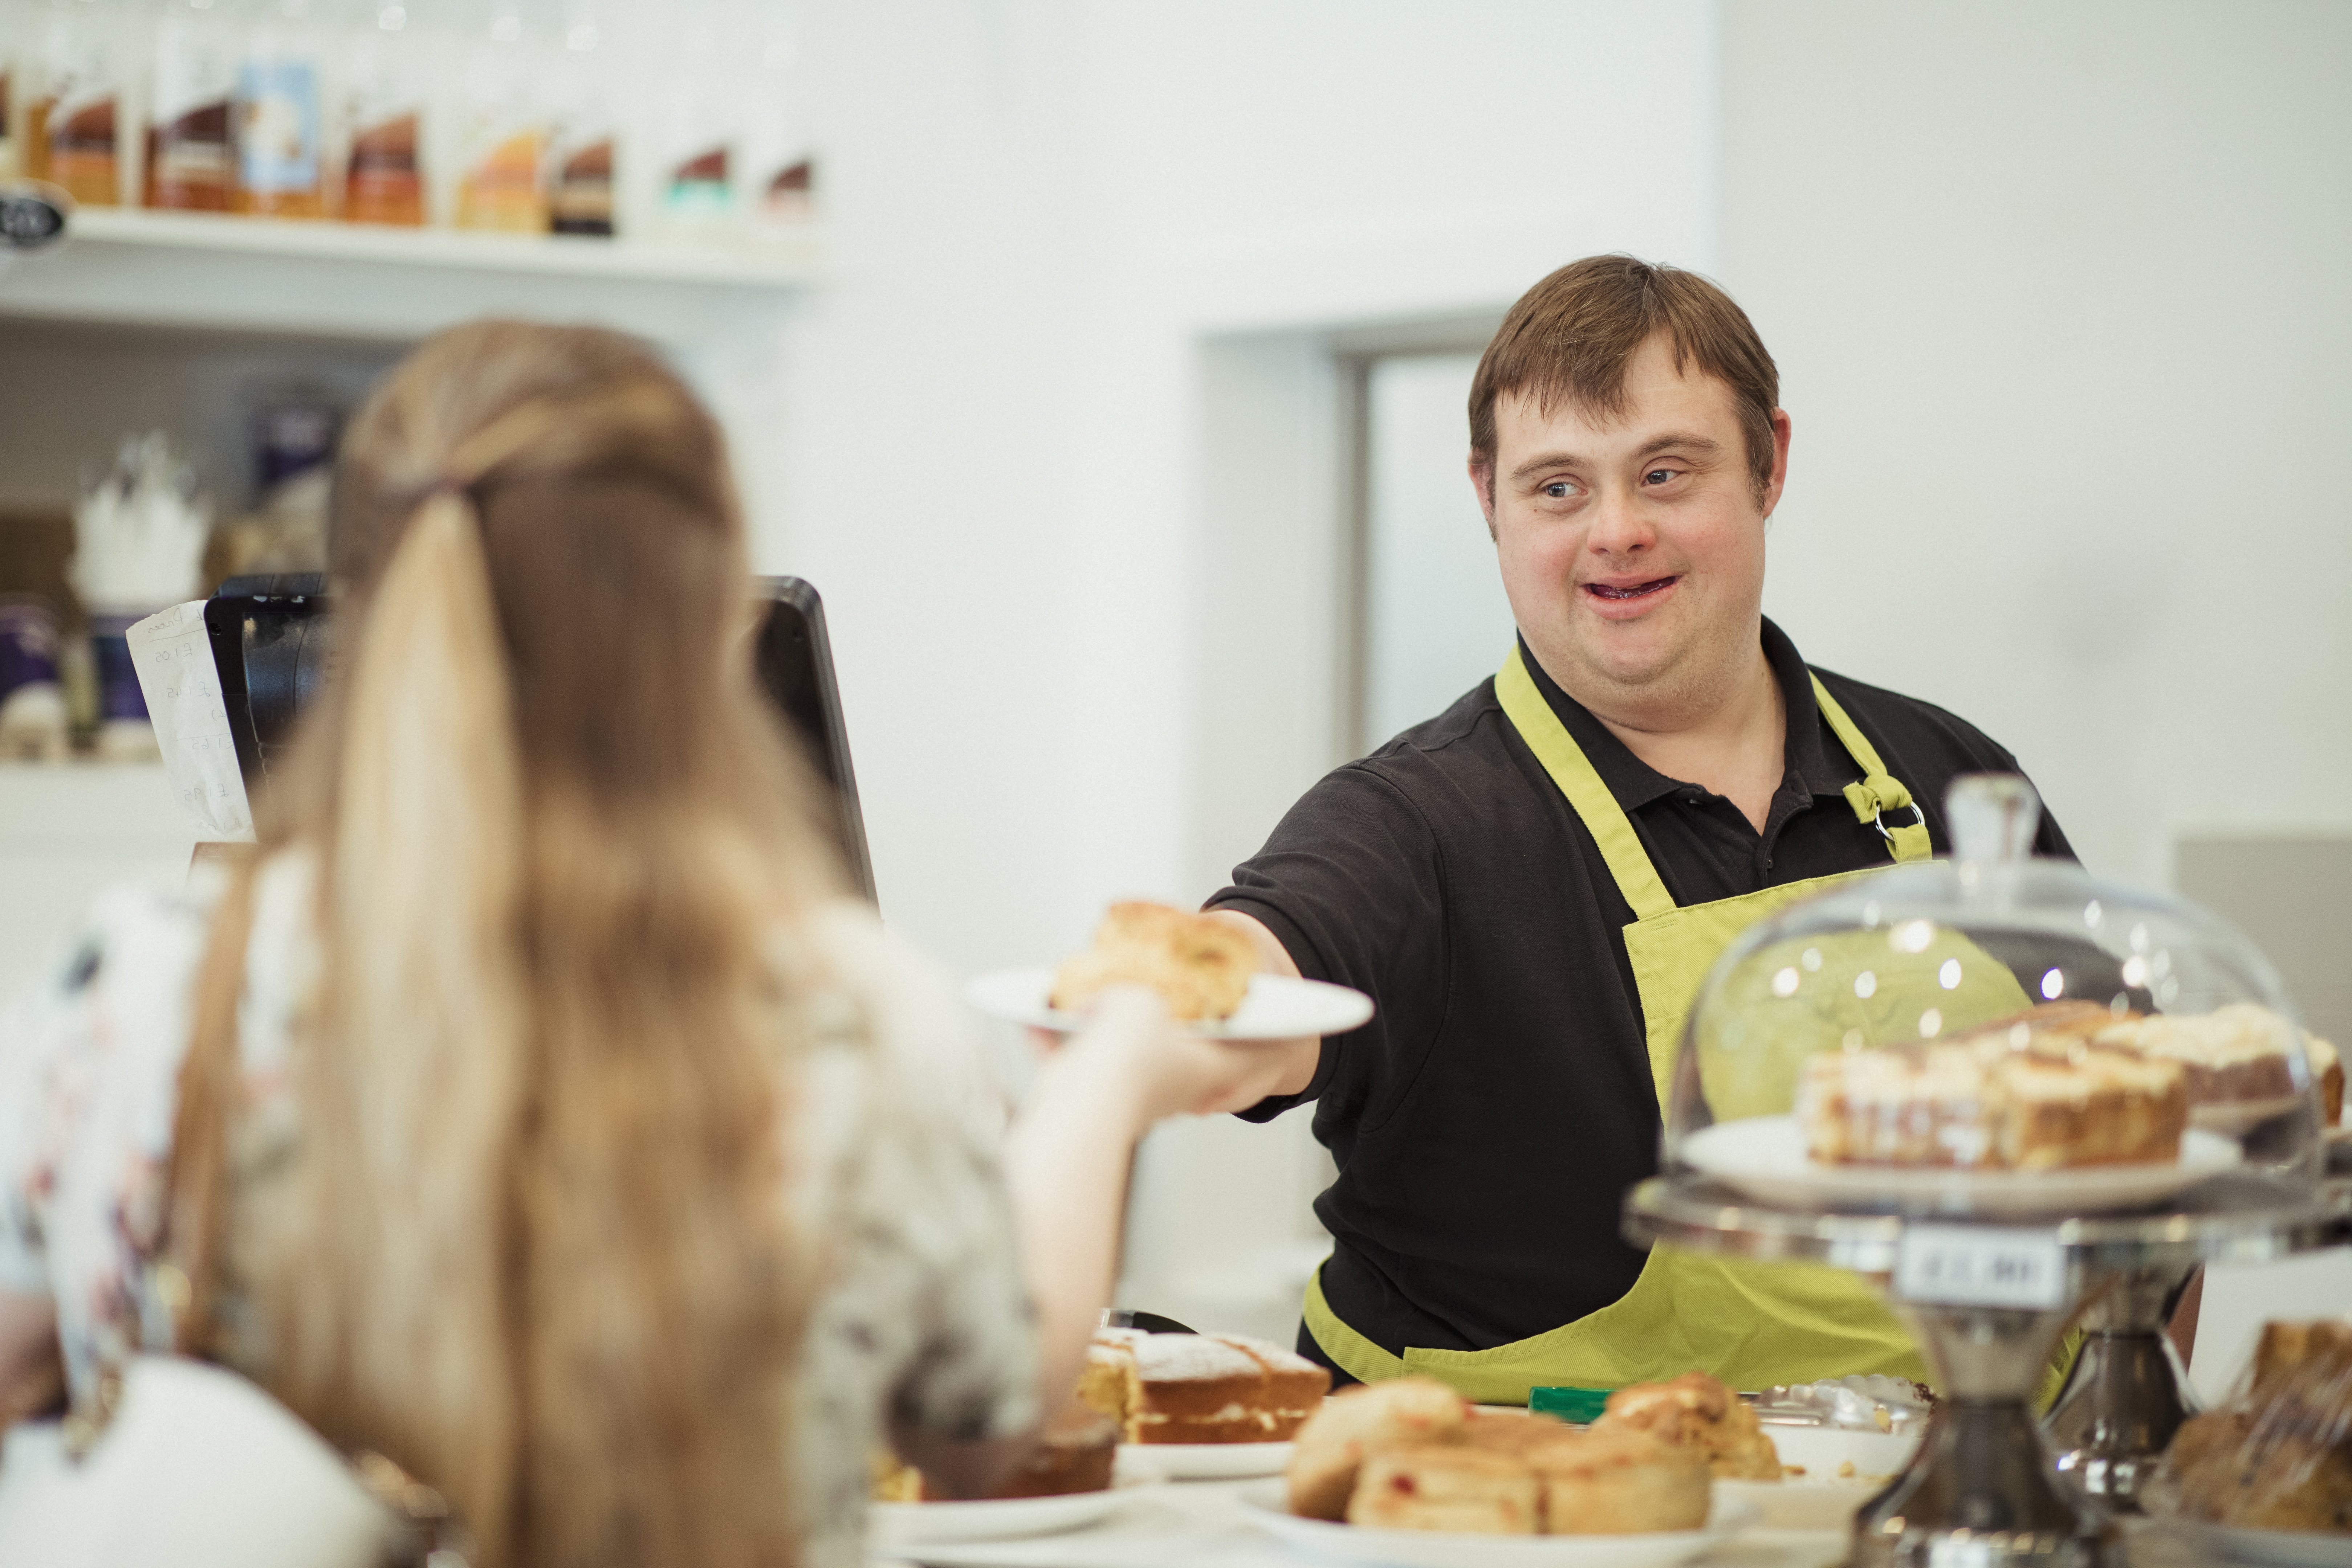 Ein Mann mit Down-Syndrom serviert einer Frau in einem Café, in dem er arbeitet, ein Brötchen.